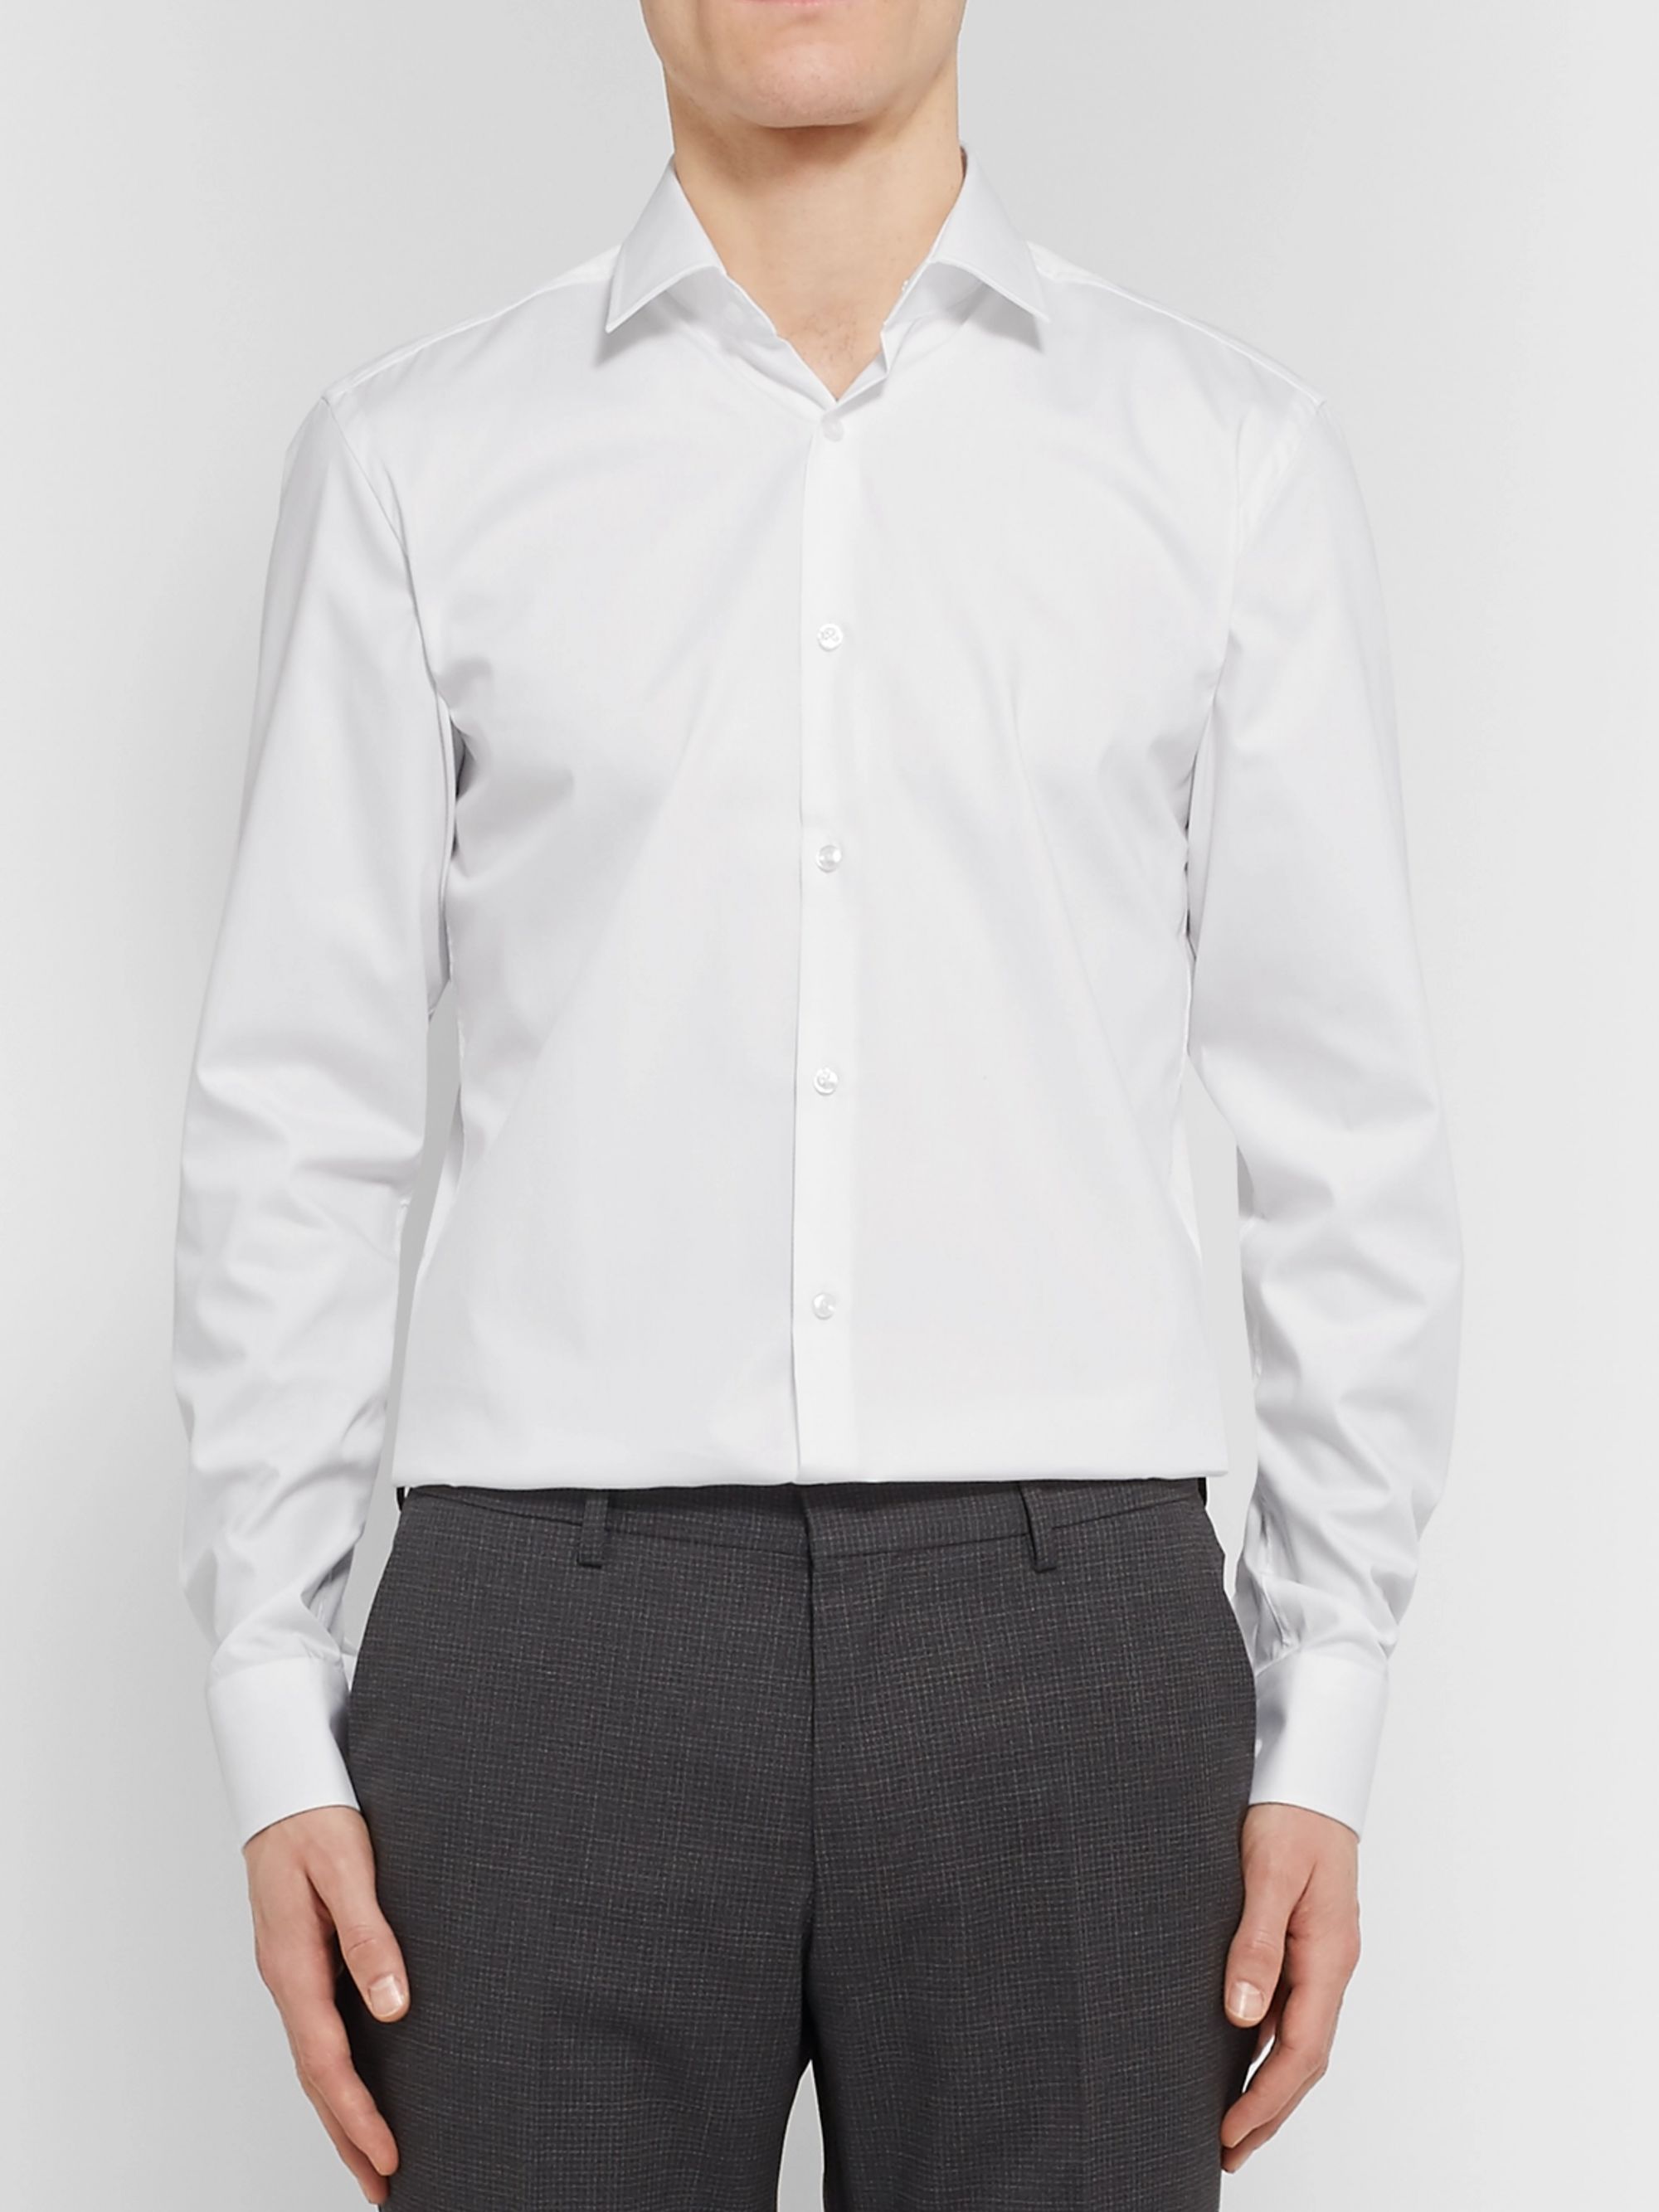 White White Jenno Slim-Fit Cotton Shirt | HUGO BOSS | MR PORTER